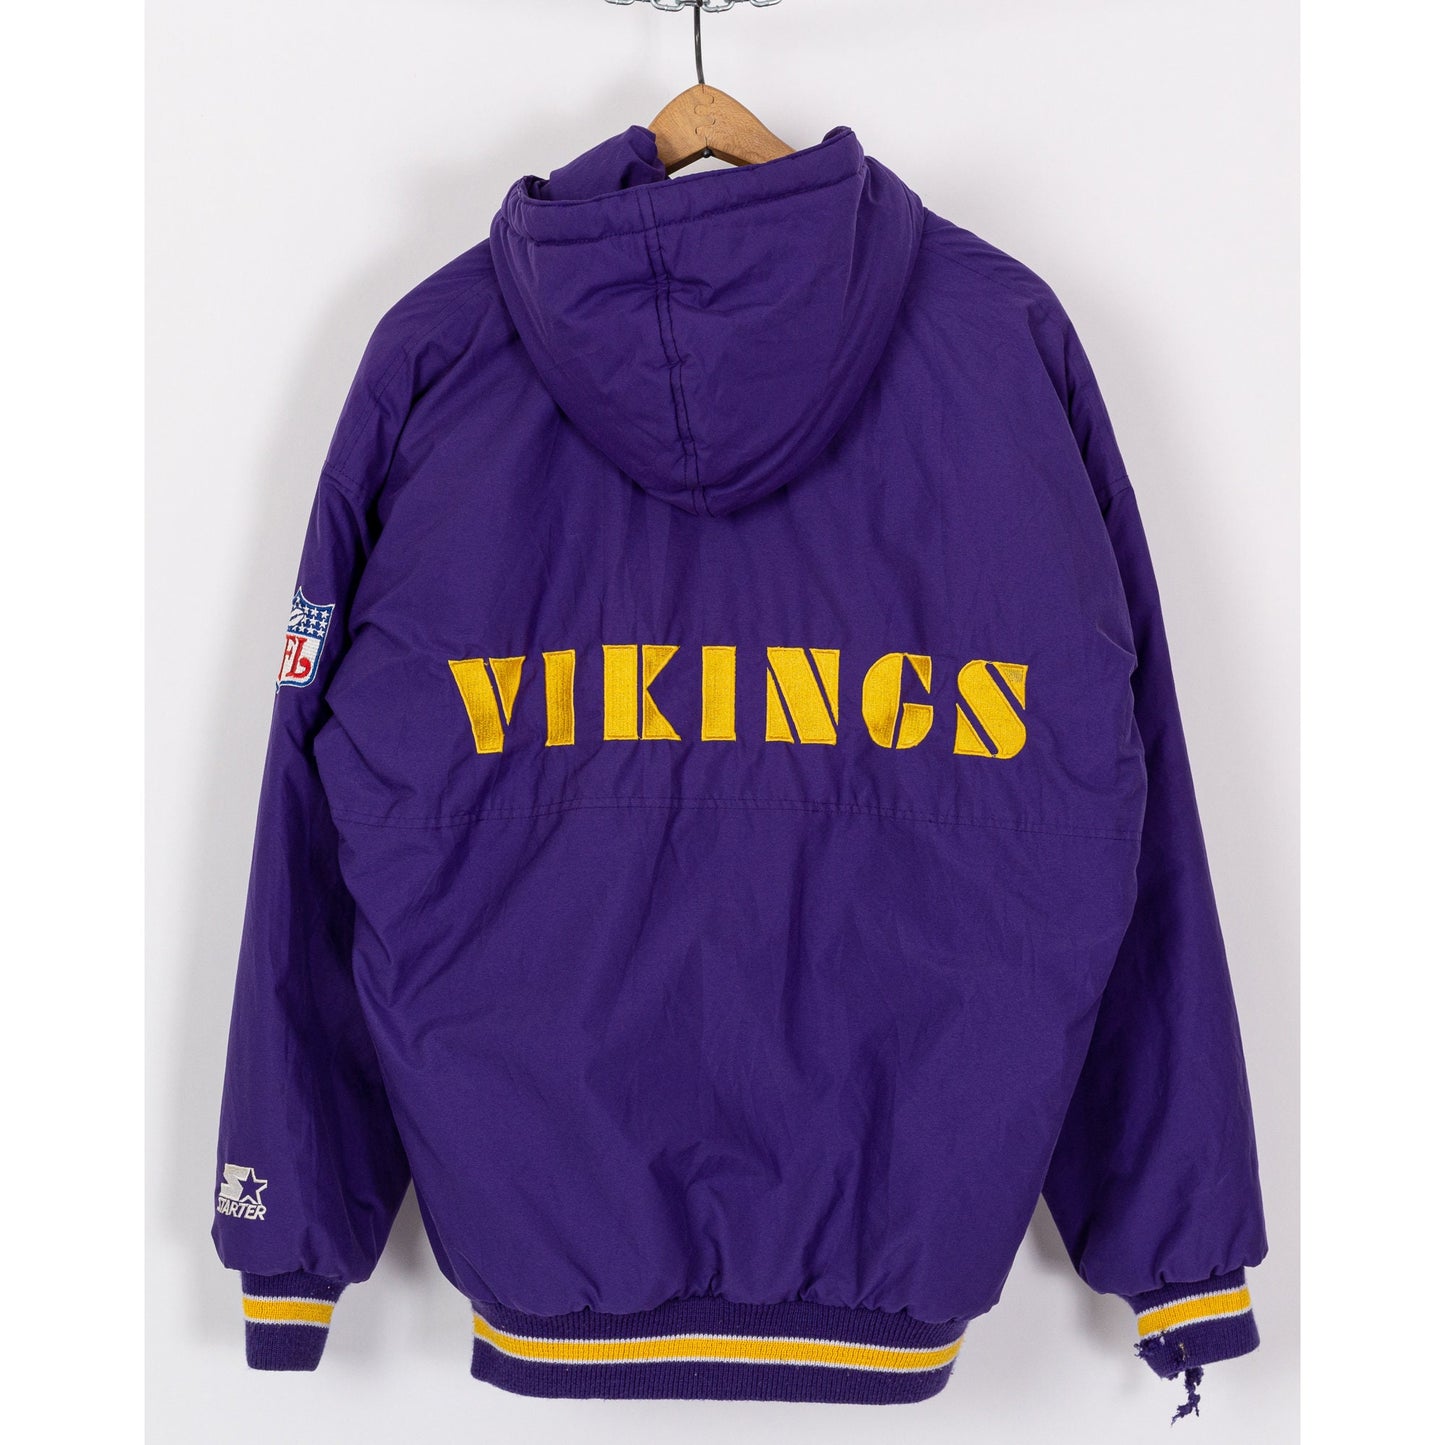 90s Minnesota Vikings Starter Jacket - Men's Small 